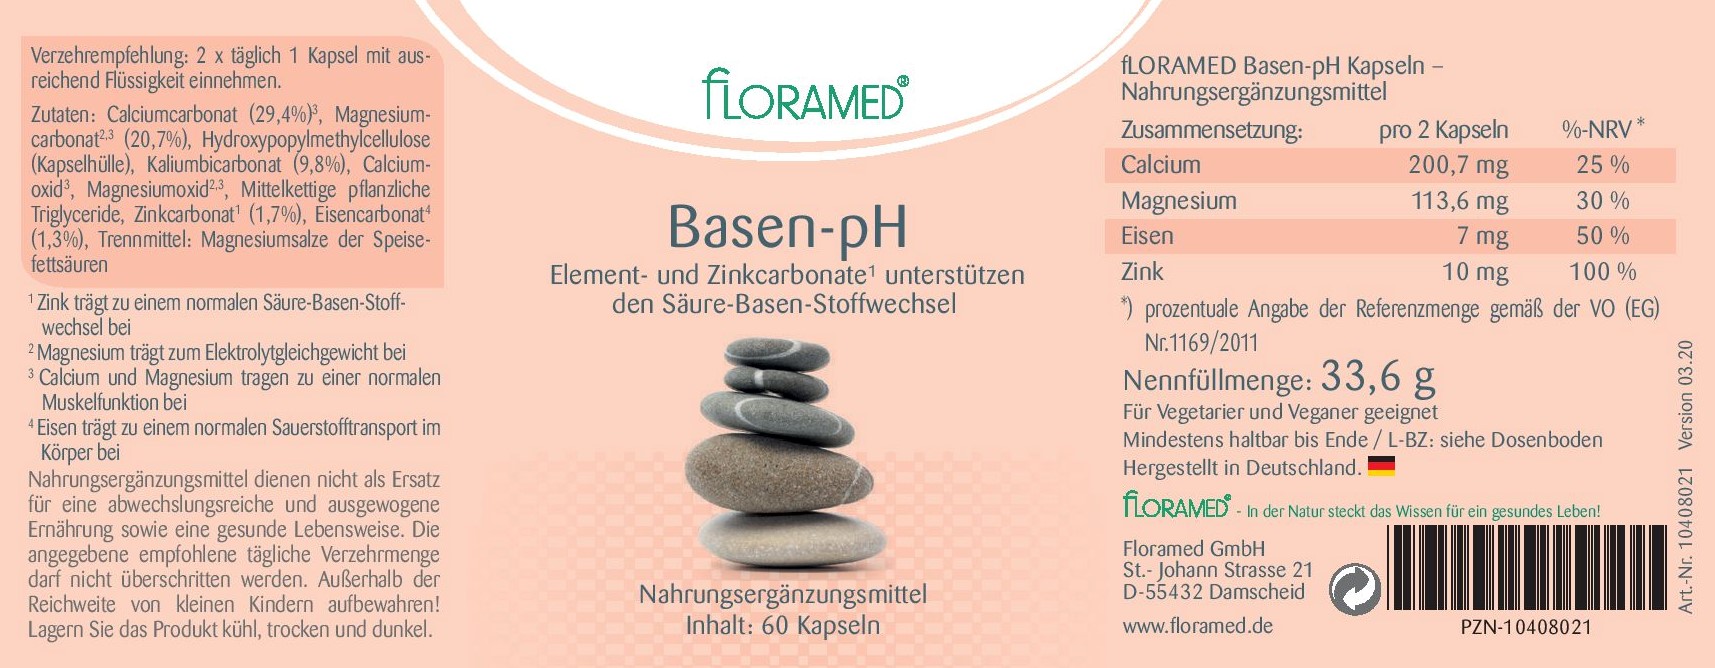 Floramed Basen-pH